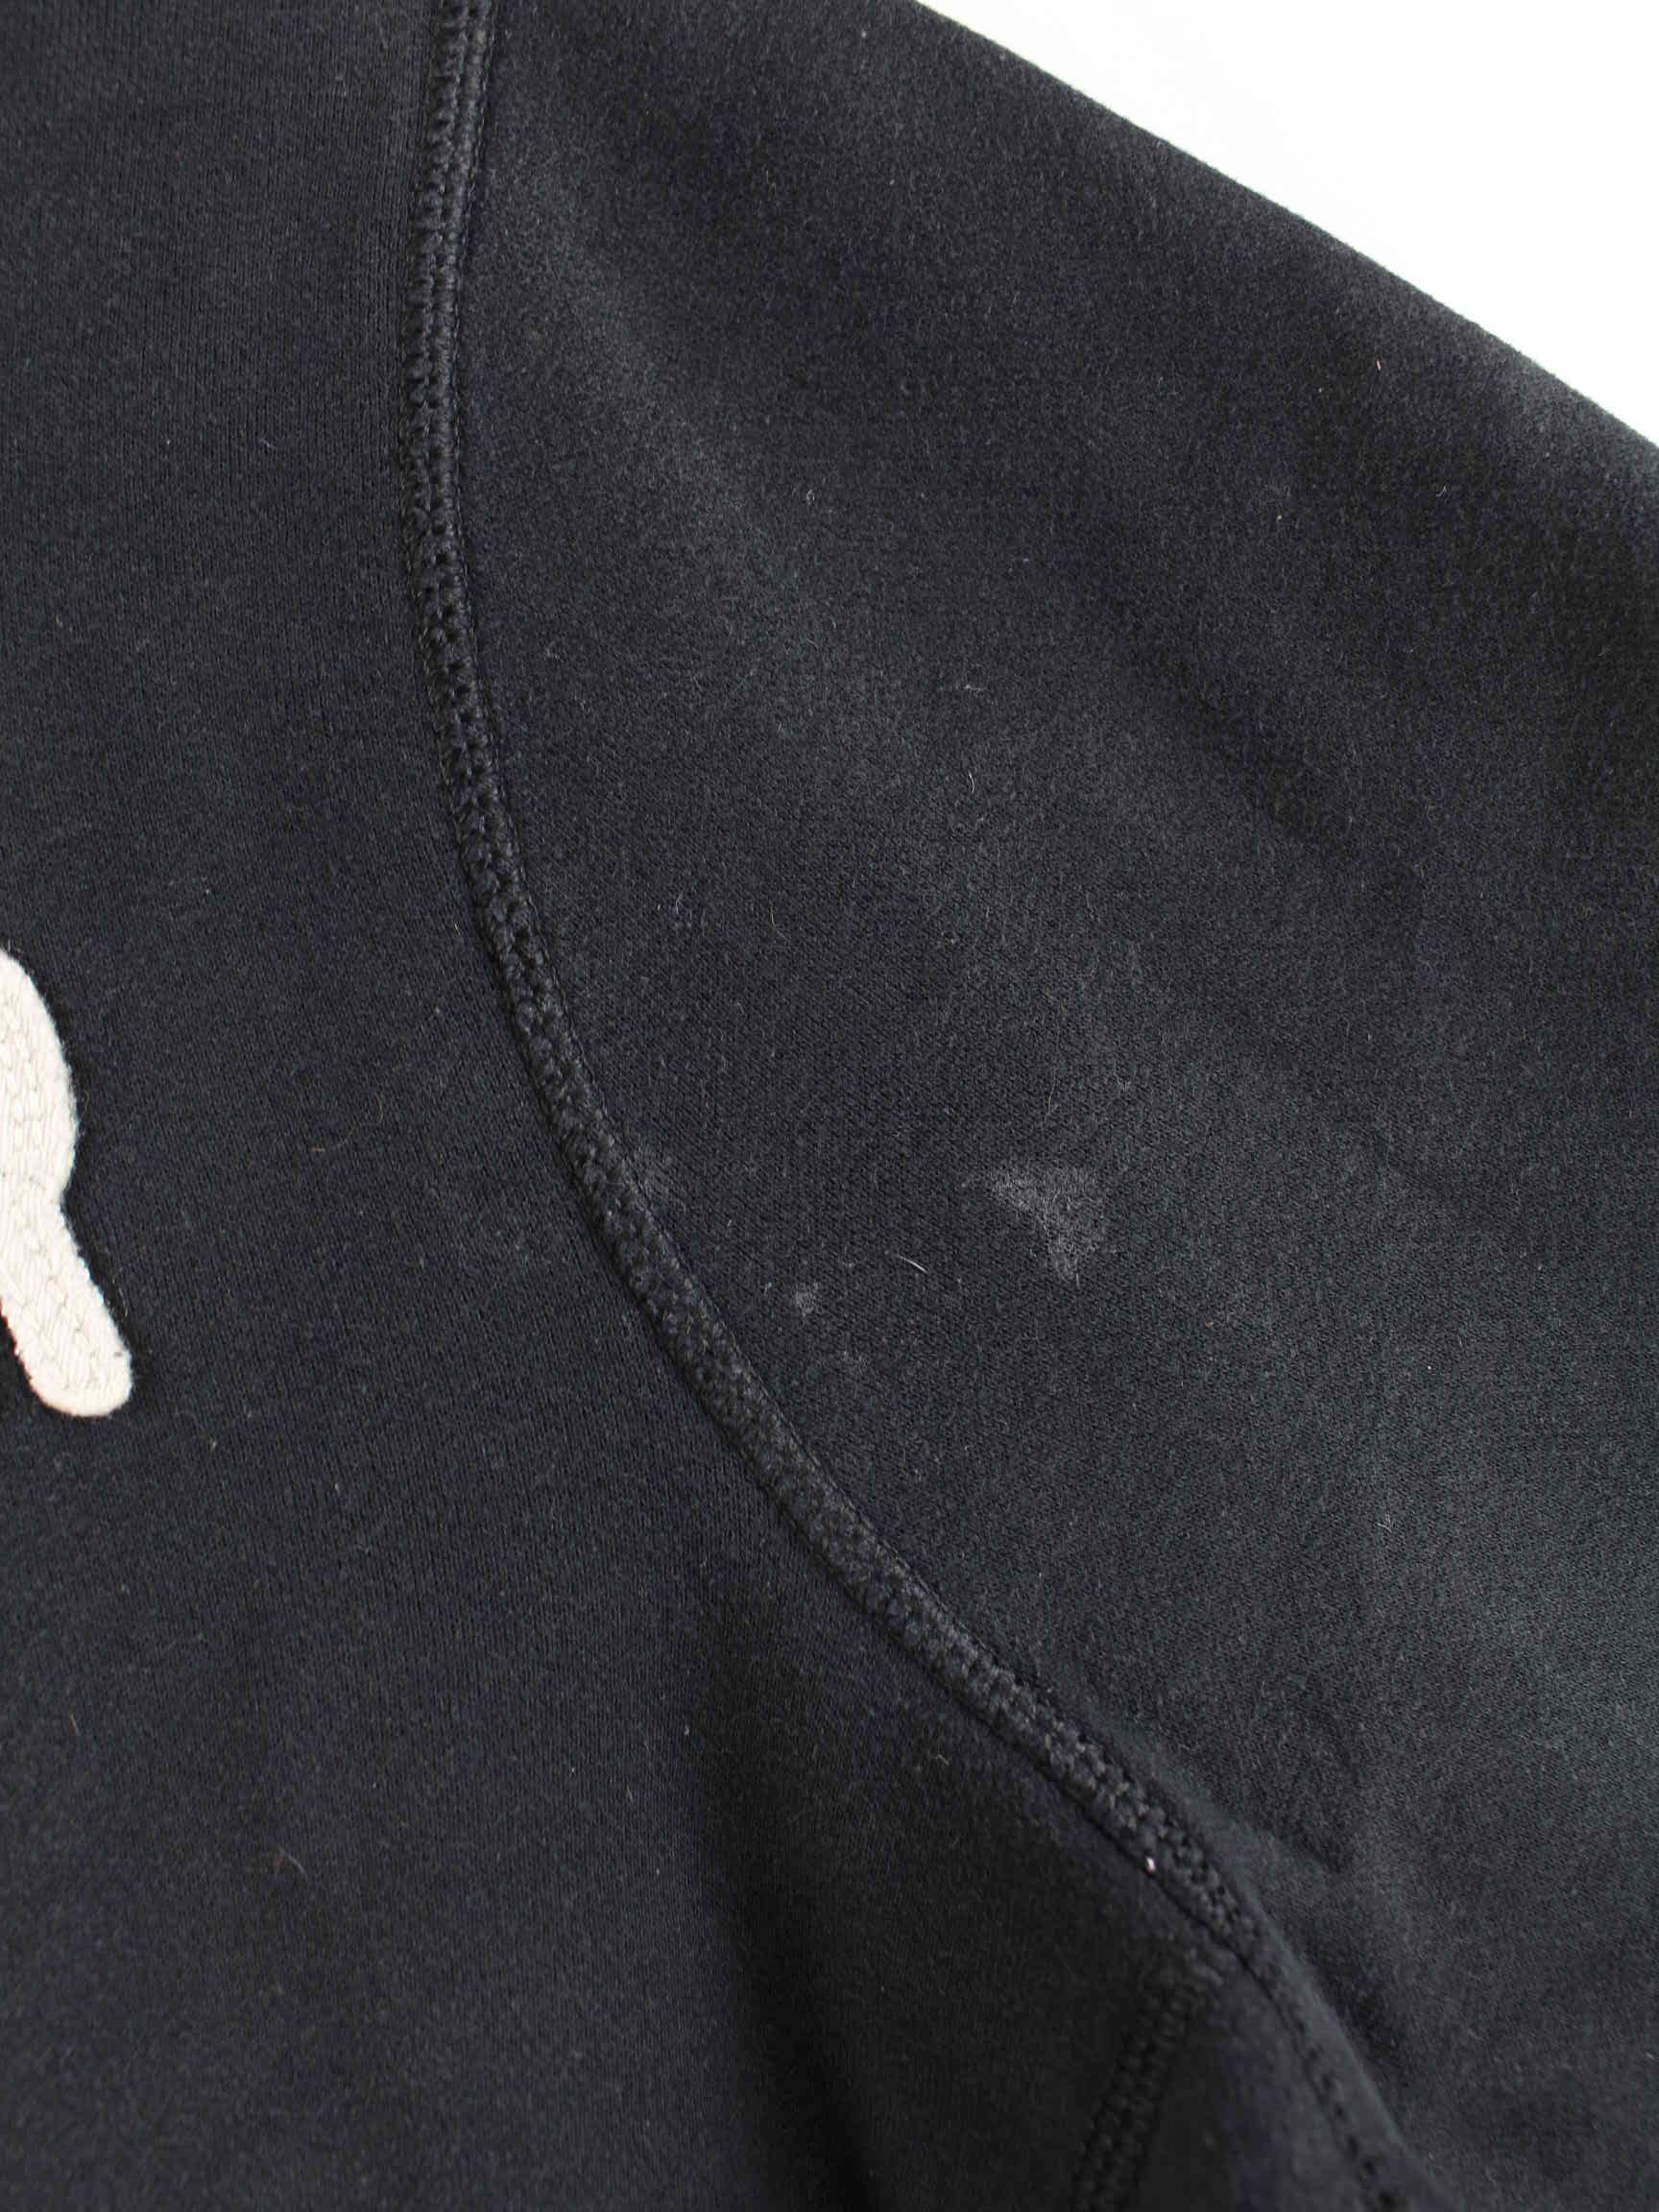 Hollister Damen Embroidered Sweater Schwarz XL (detail image 3)